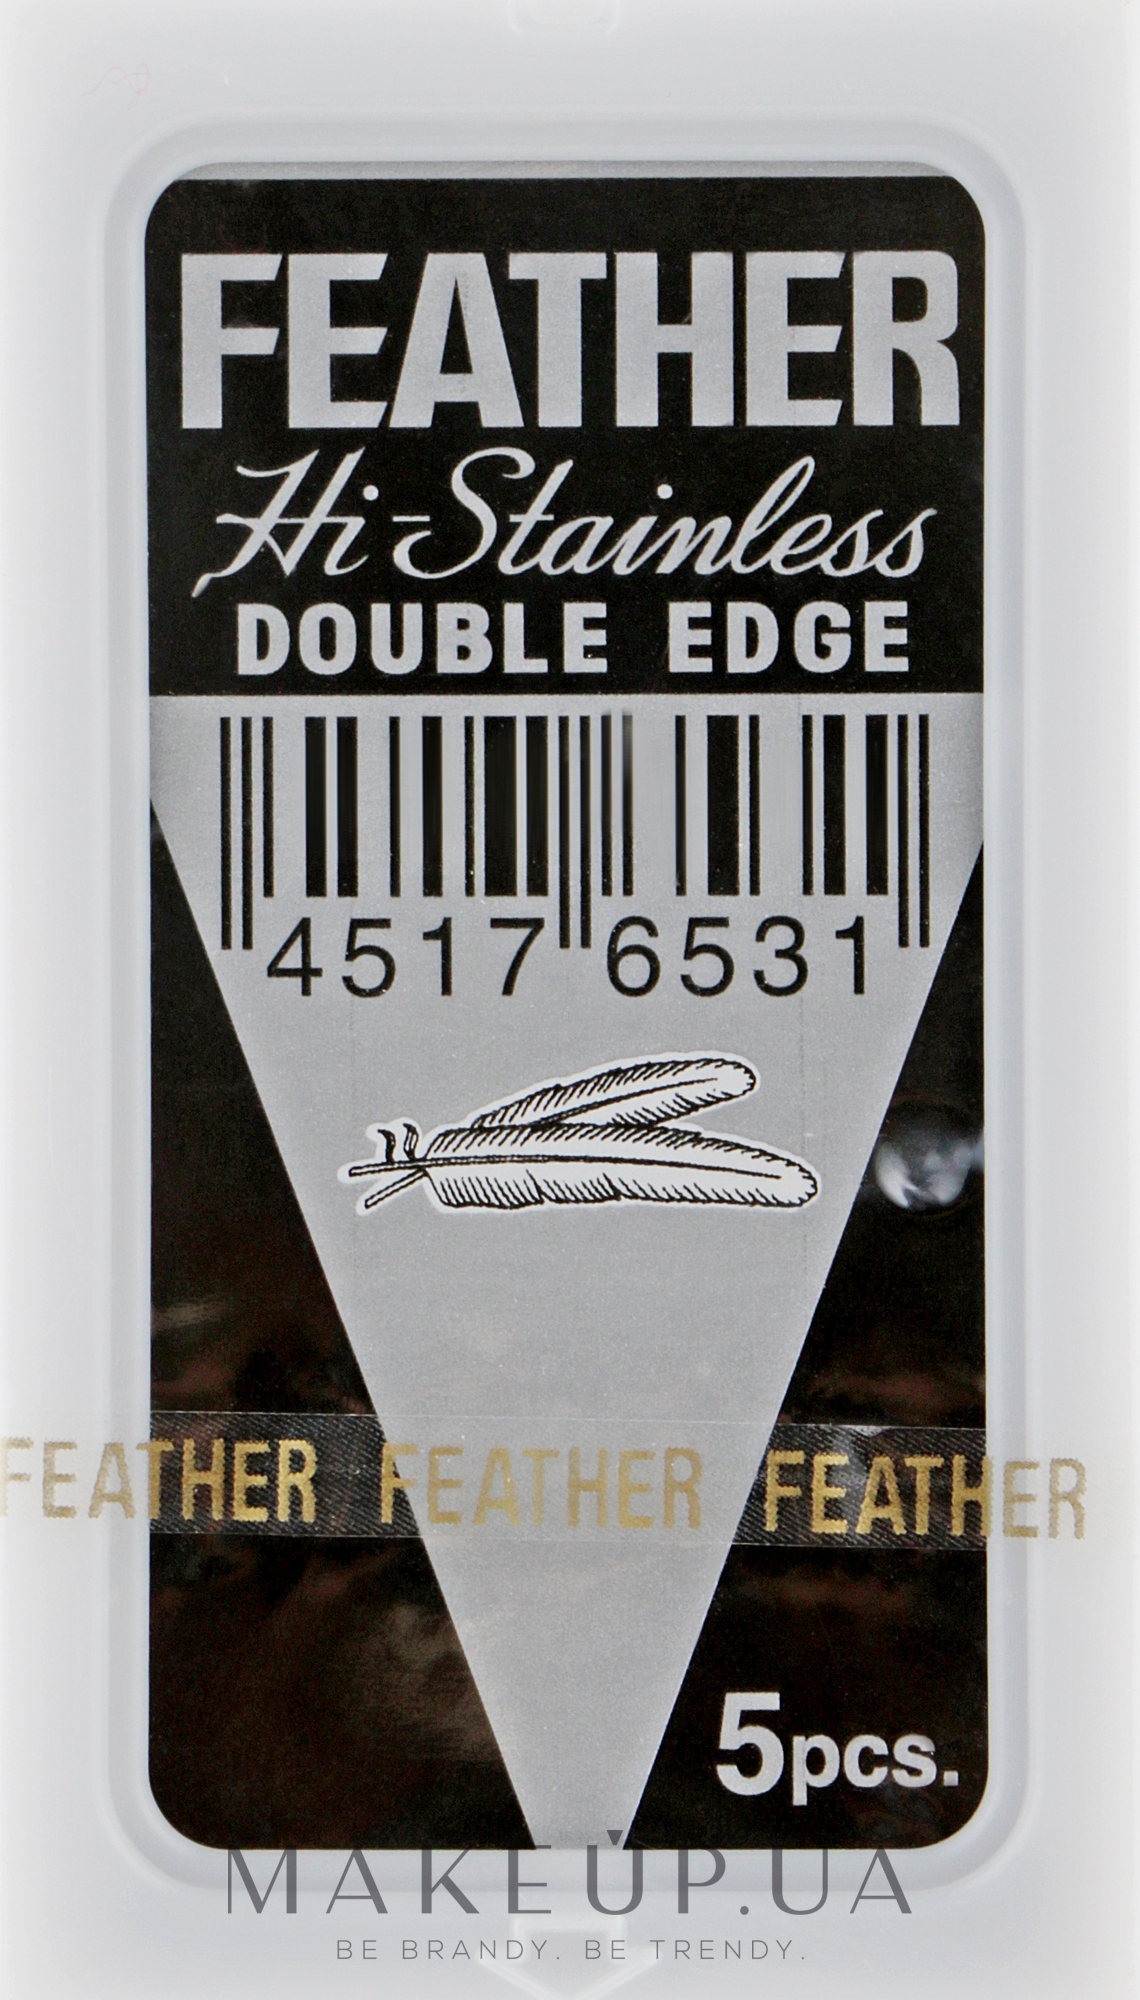 Змінні двосторонні леза для класичної бритви 71-S, 5 шт. - Feather 71-S Hi-stainless — фото 5шт